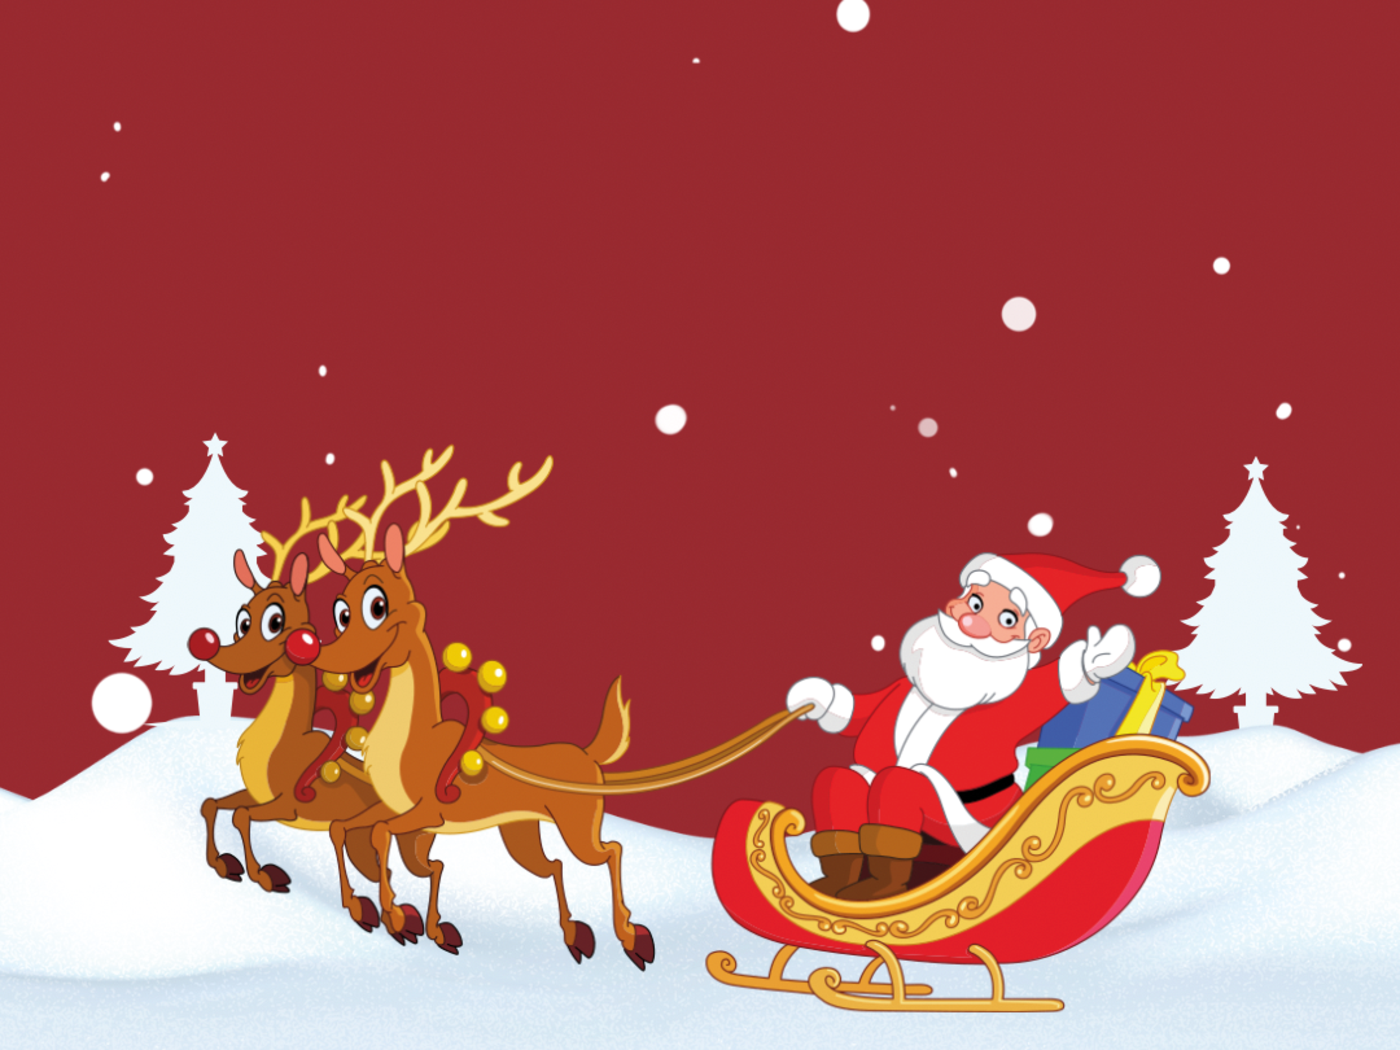 Eine Illustration, auf der ein Weihnachtsmann im Schlitten von zwei Rentieren durch eine schneebedeckte Landschaft gezogen wird.